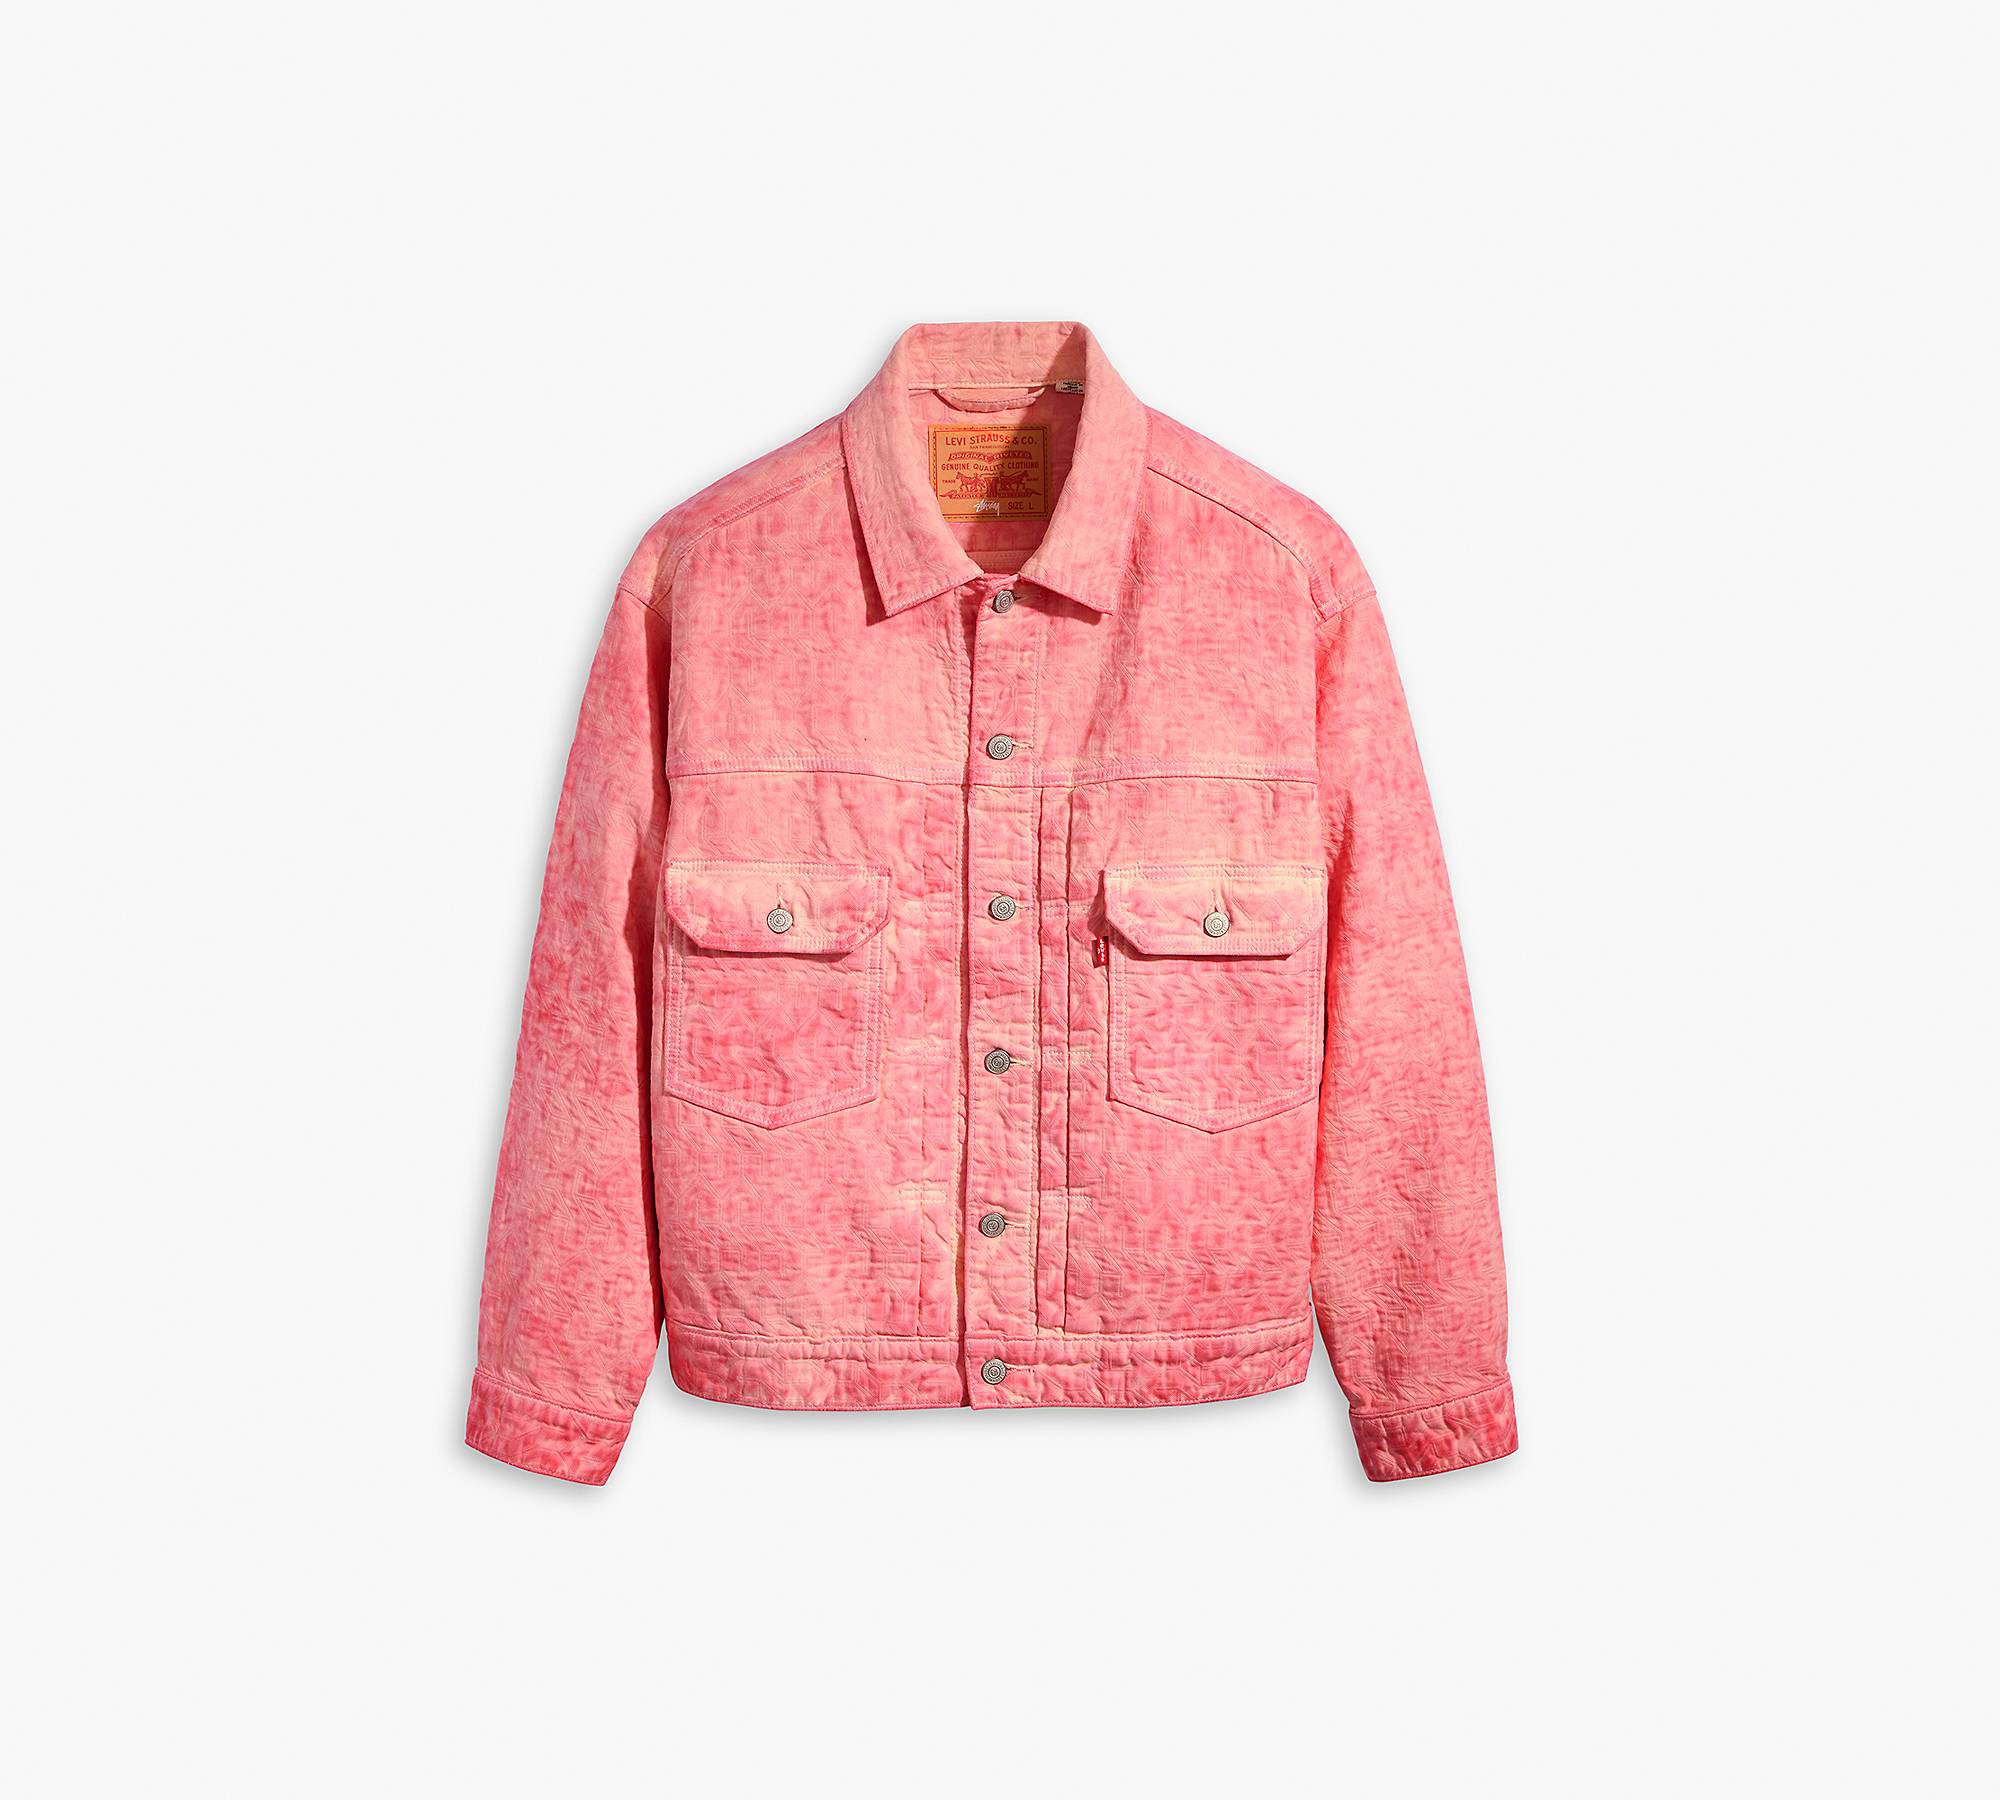 Stüssy & Levi's® Jacquard Trucker Jacket - Pink | Levi's® US